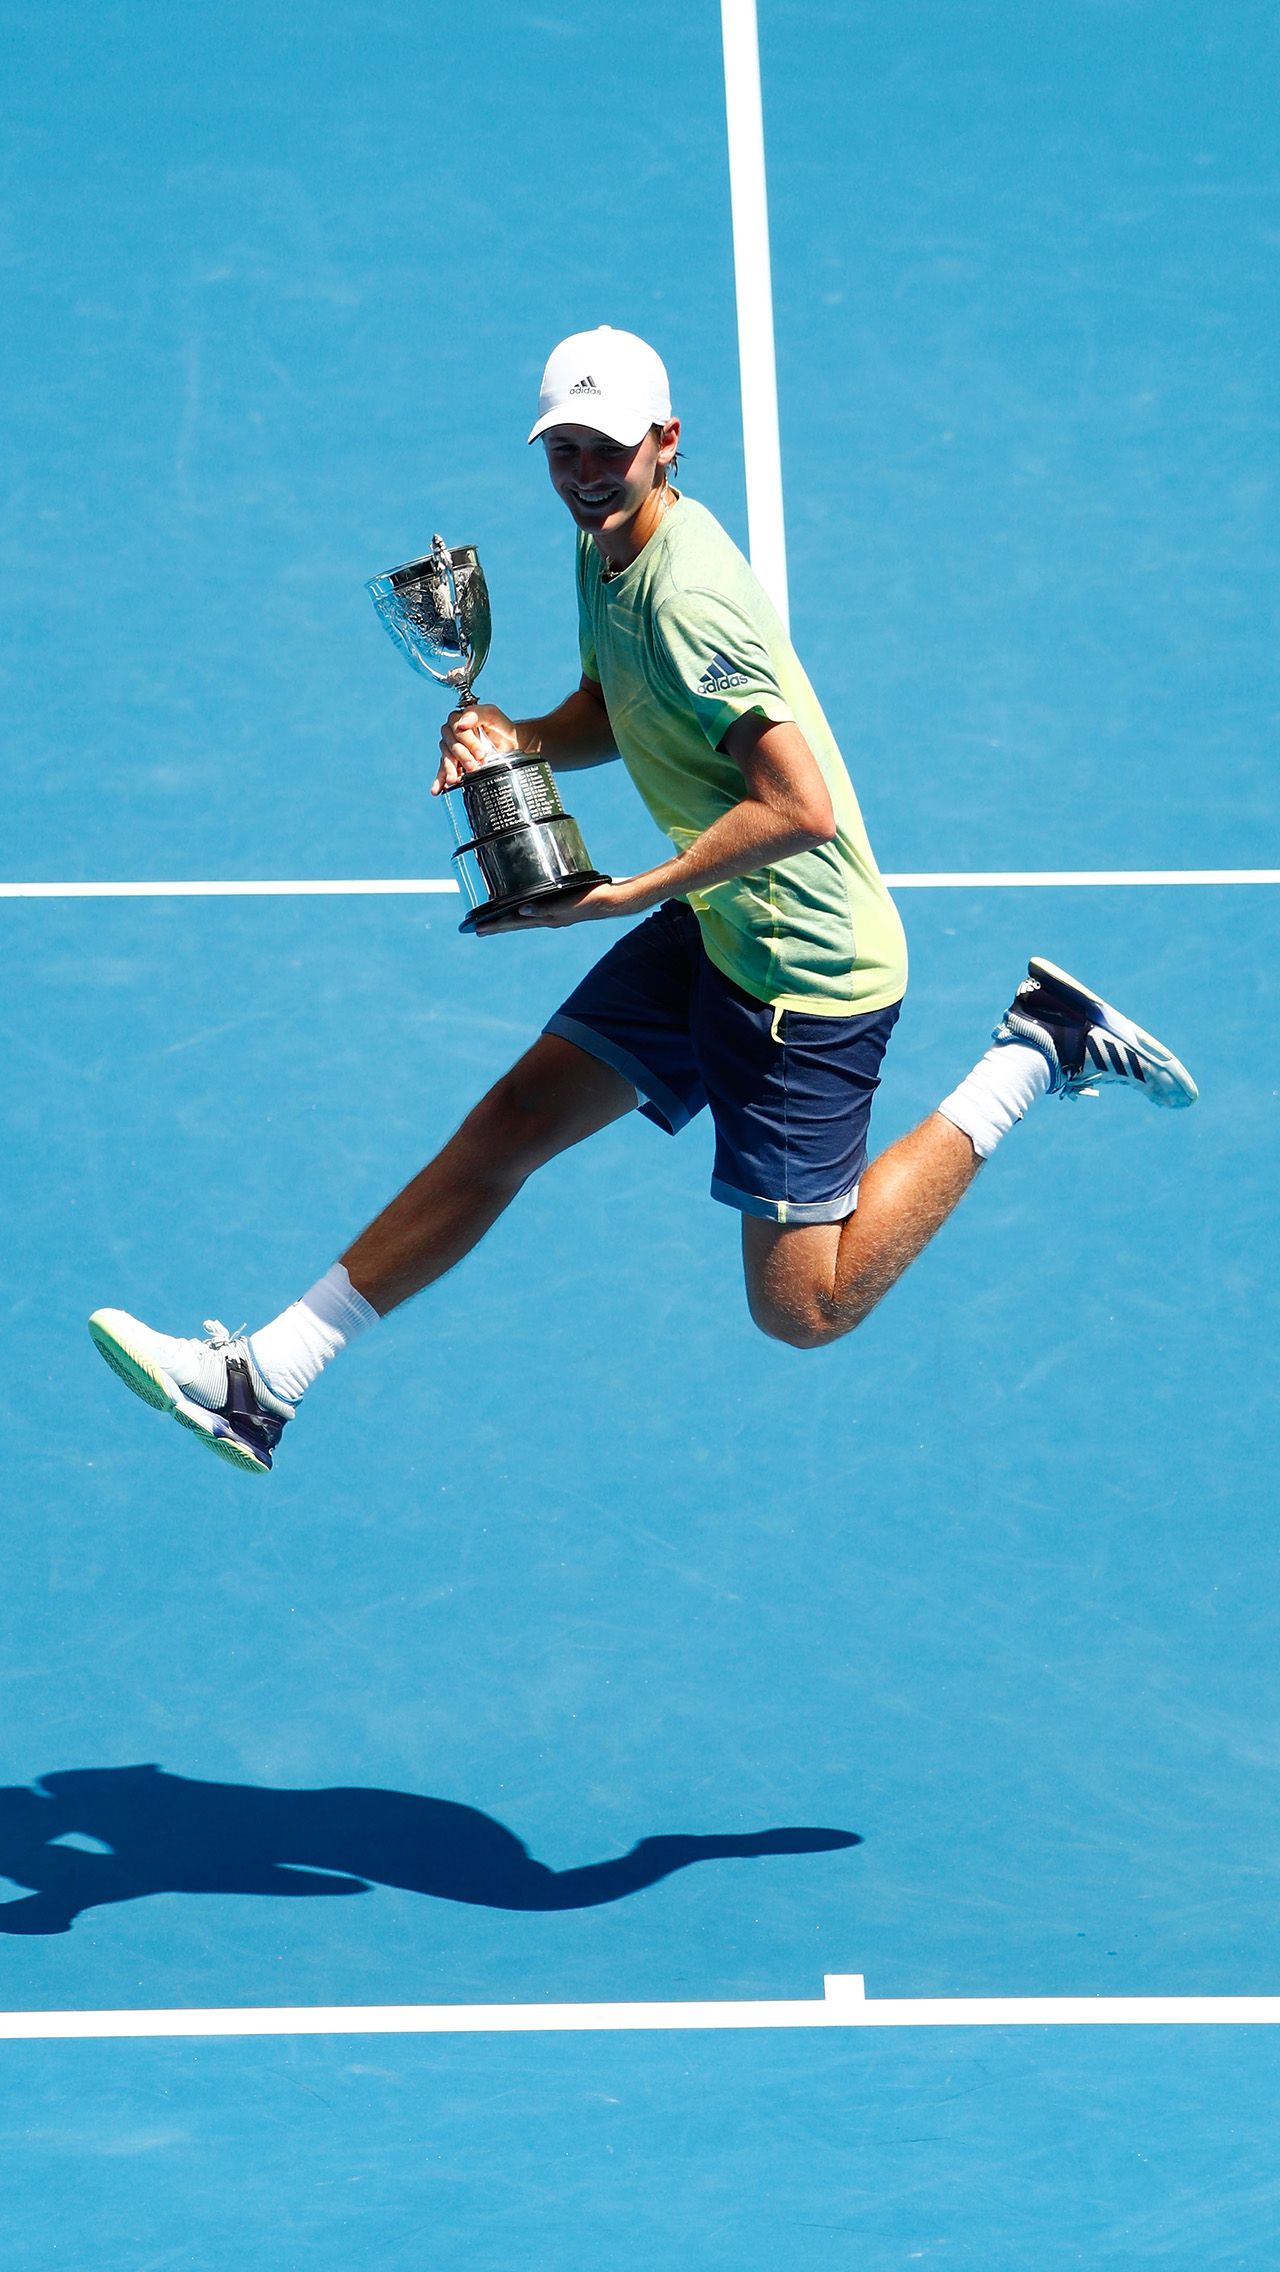 В 2018 году Корда выиграл юниорский Открытый чемпионат Австралии. Ему было тогда 17 лет.